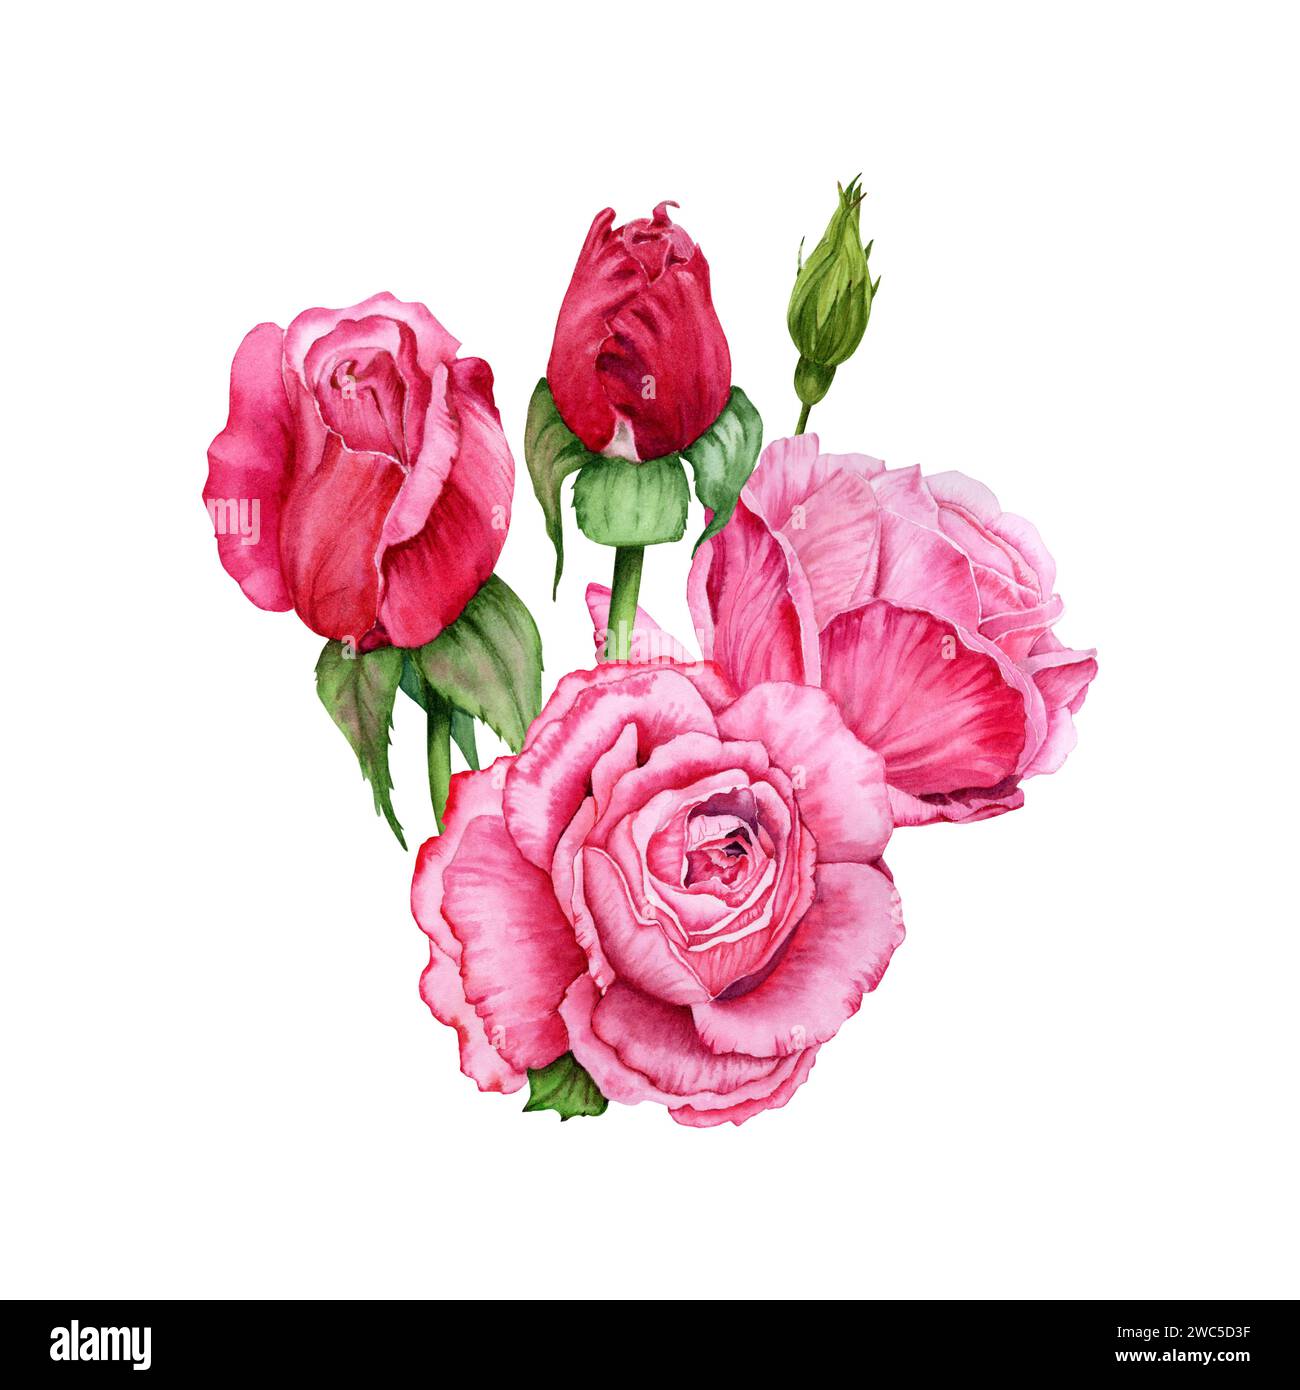 Composizione con fiori di rosa, gemme e foglie verdi. Illustrazione ad acquerello disegnata a mano isolata su sfondo bianco. Design floreale Foto Stock